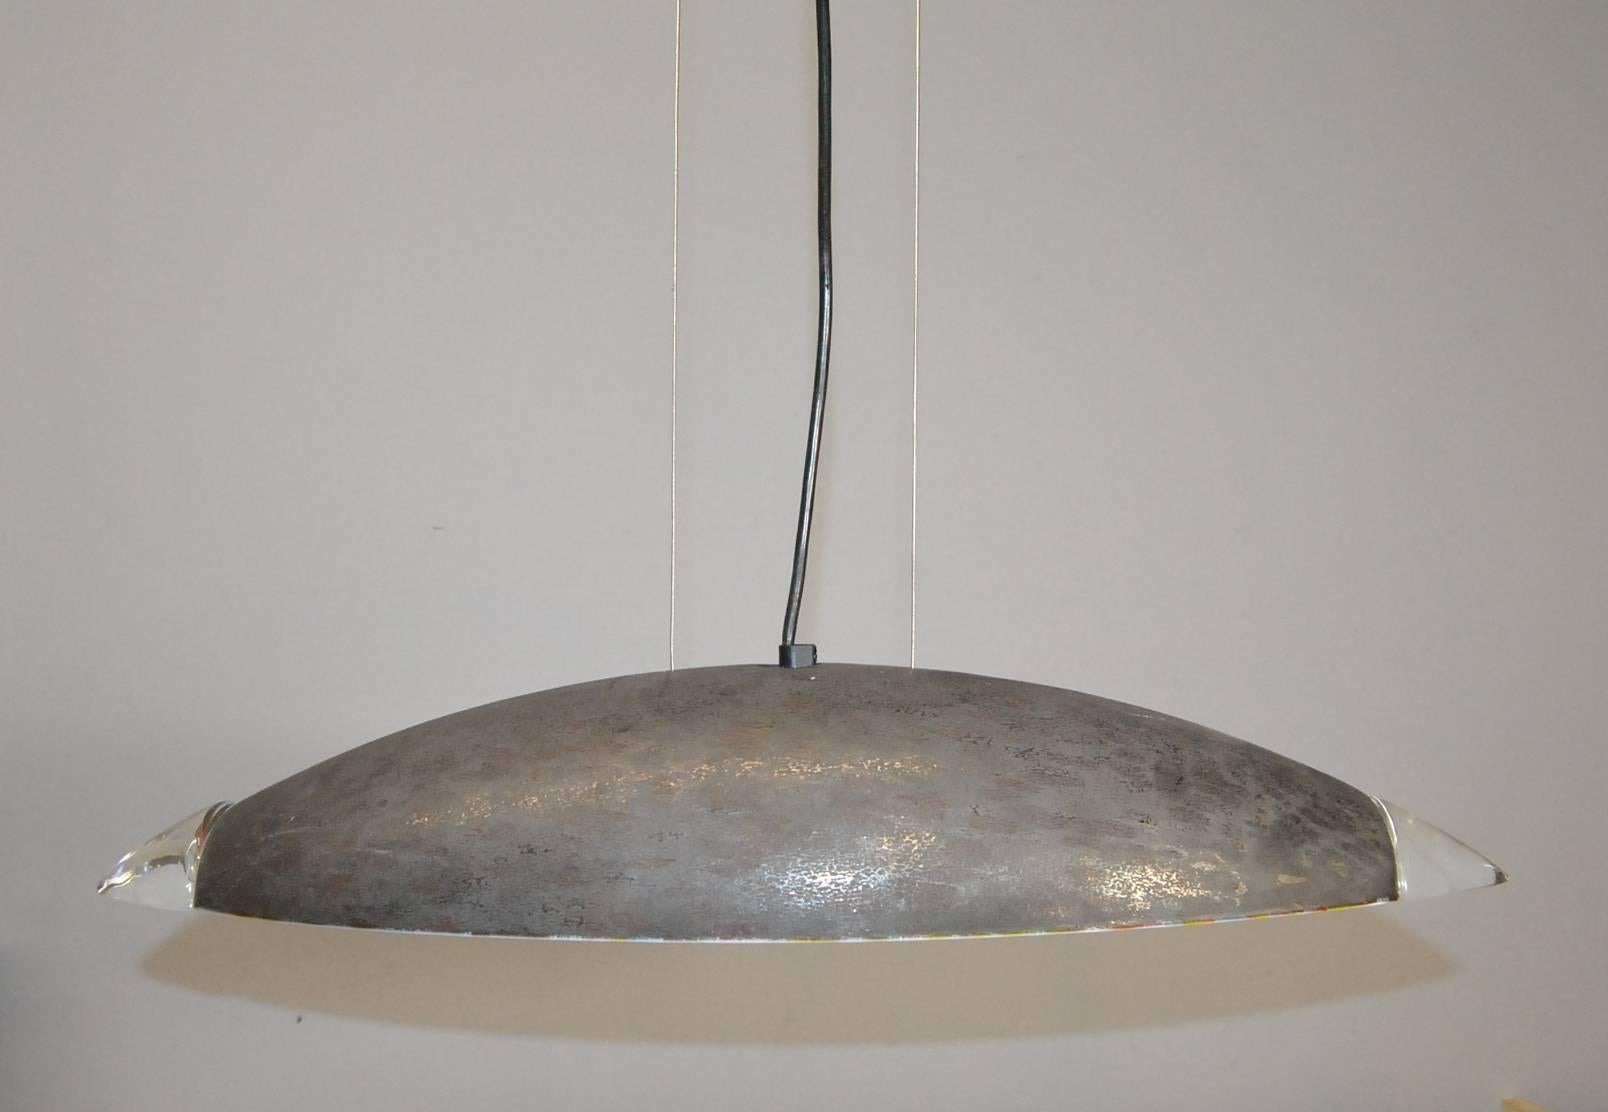 20th Century Italian Contemporary Glass Pendant by Barovier e Toso for Murano